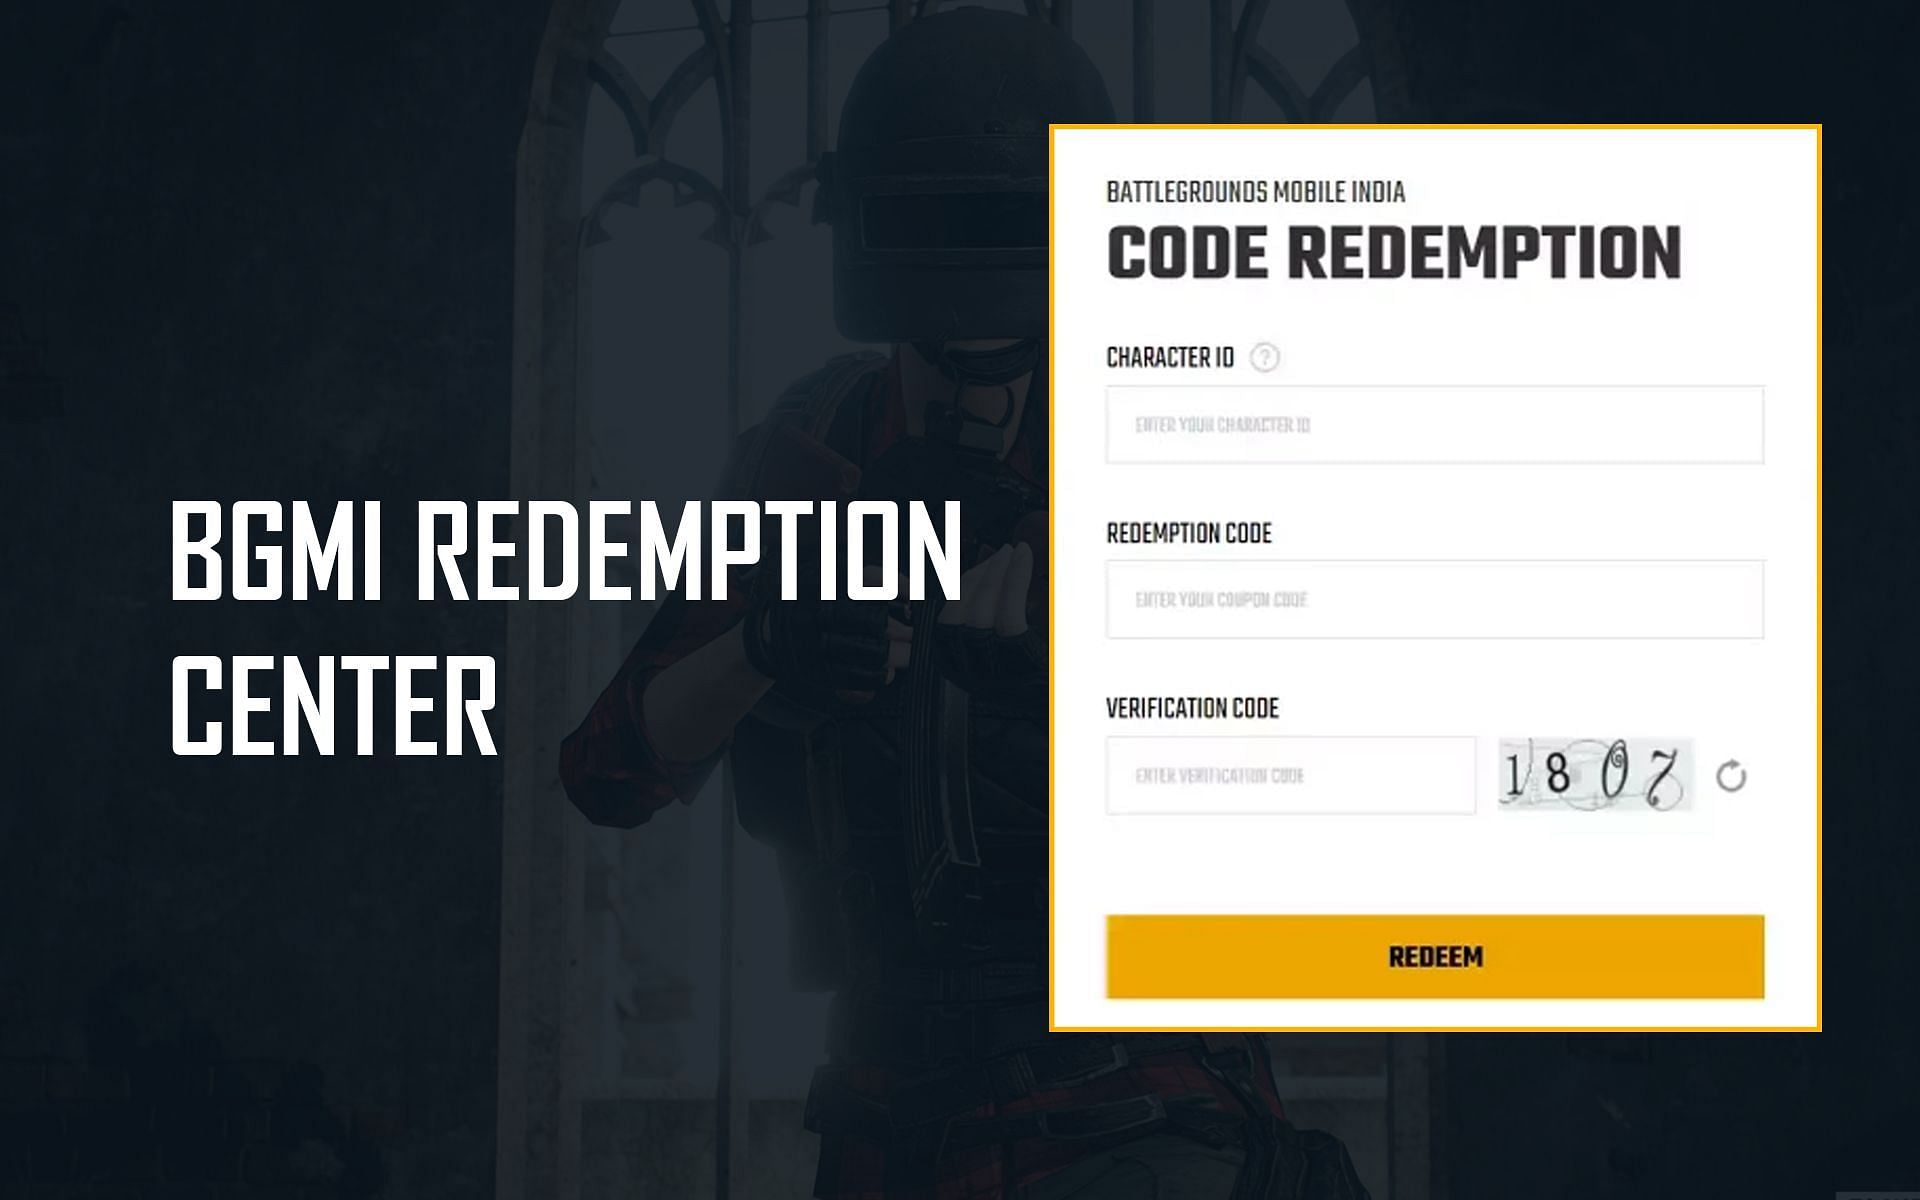 Redeeming free rewards through the BGMI Redemption Center (Image via Sportskeeda)